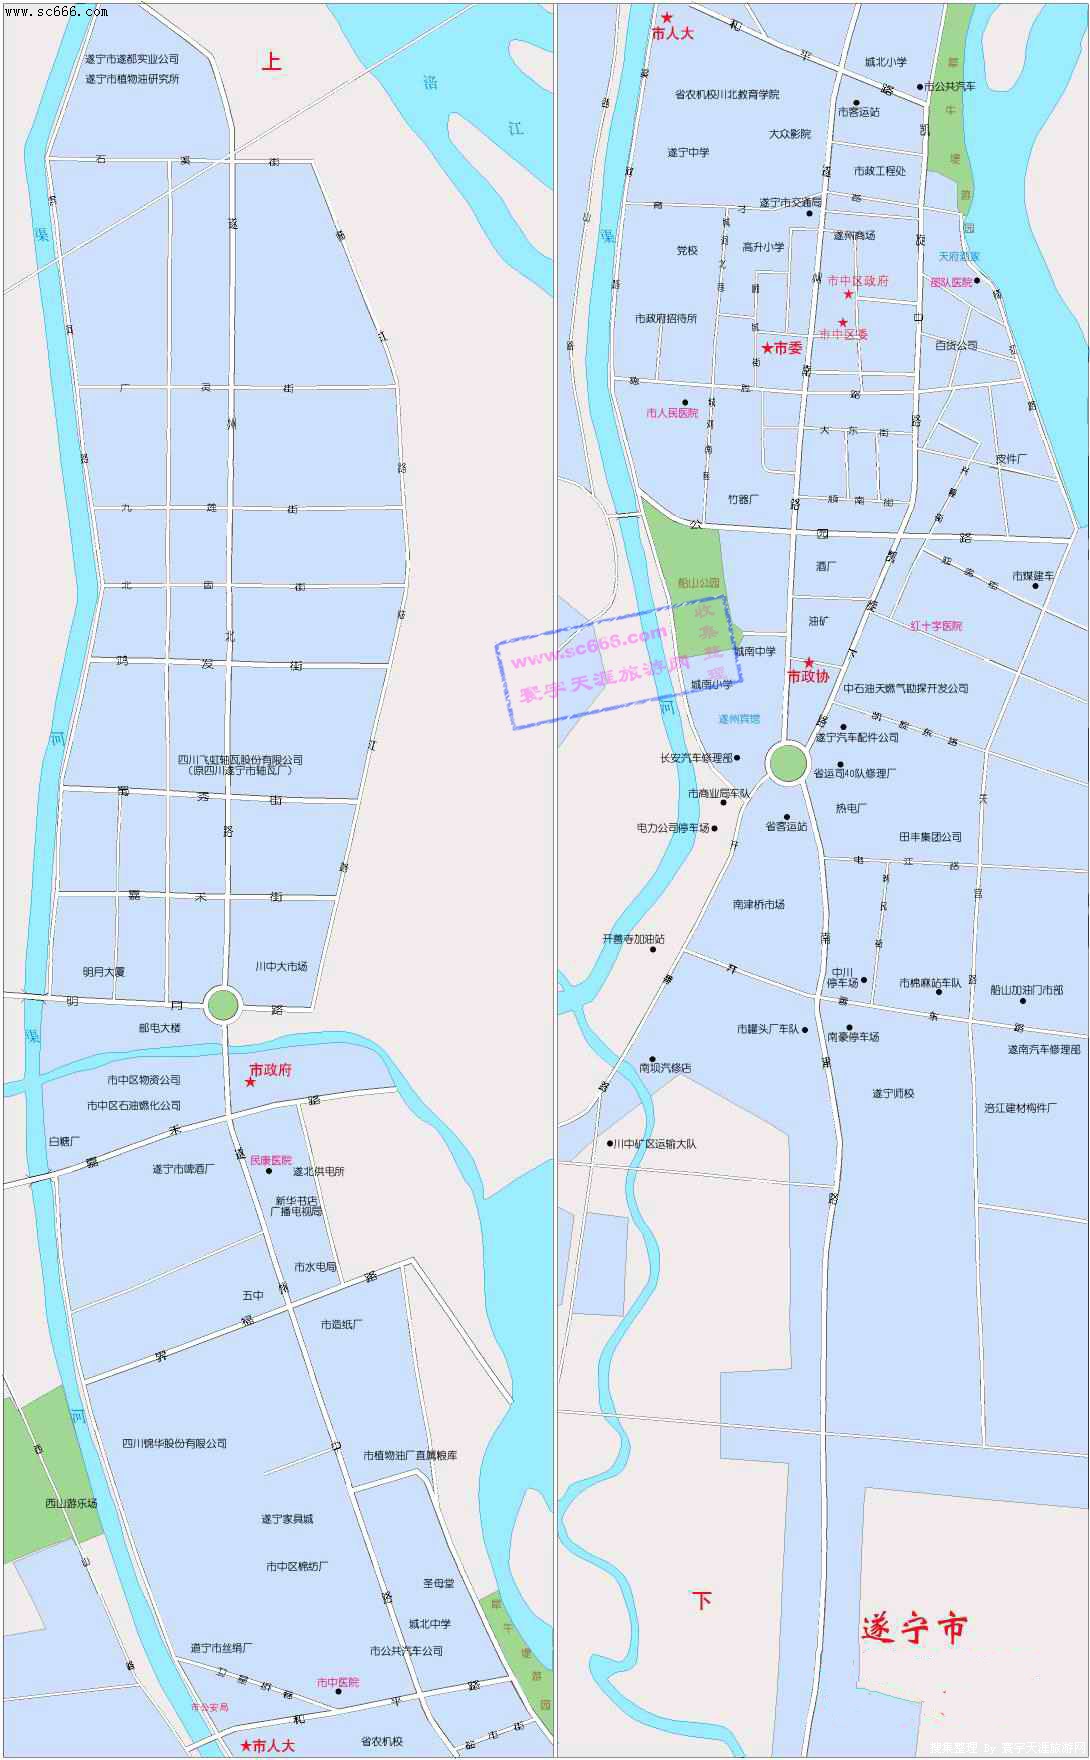 遂宁市城区地图1-四川旅游地图;; 寰宇天涯 旅游地图 > 遂宁市城区图片